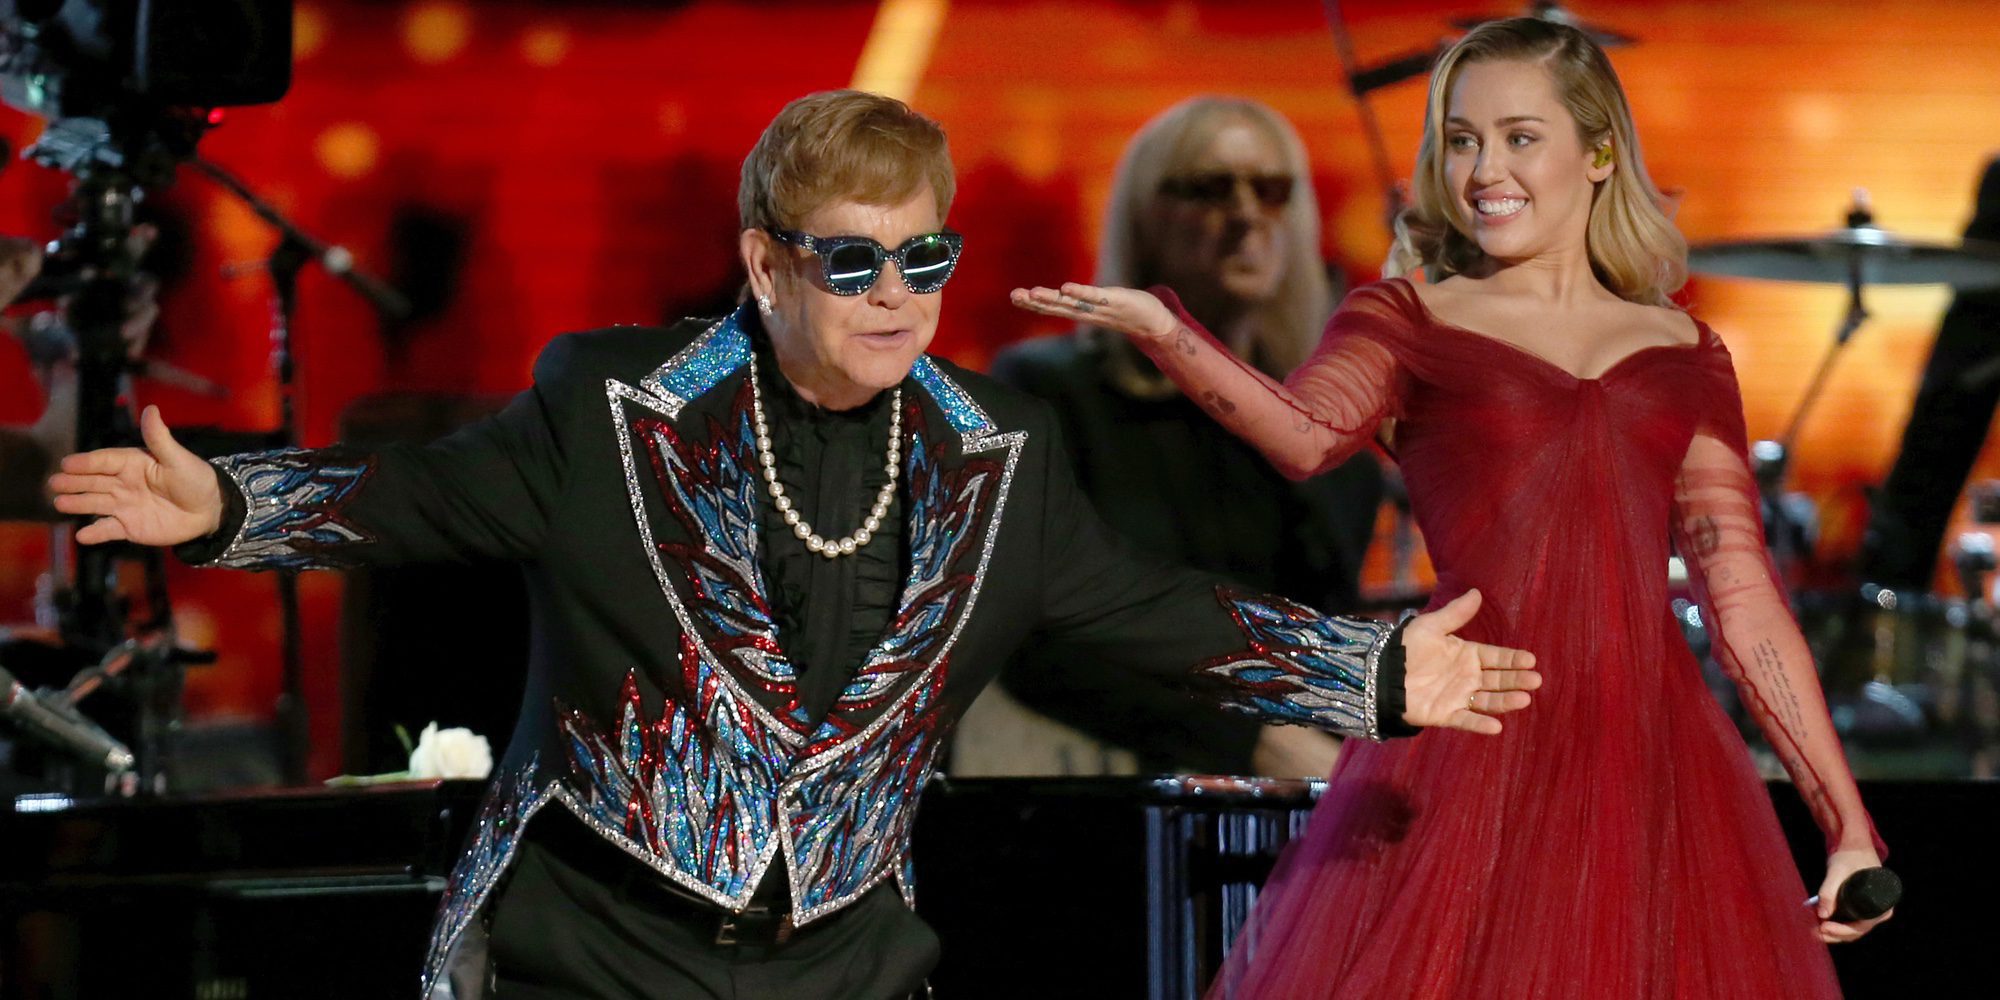 La espectacular actuación de Elton John y Miley Cyrus en los Grammy 2018